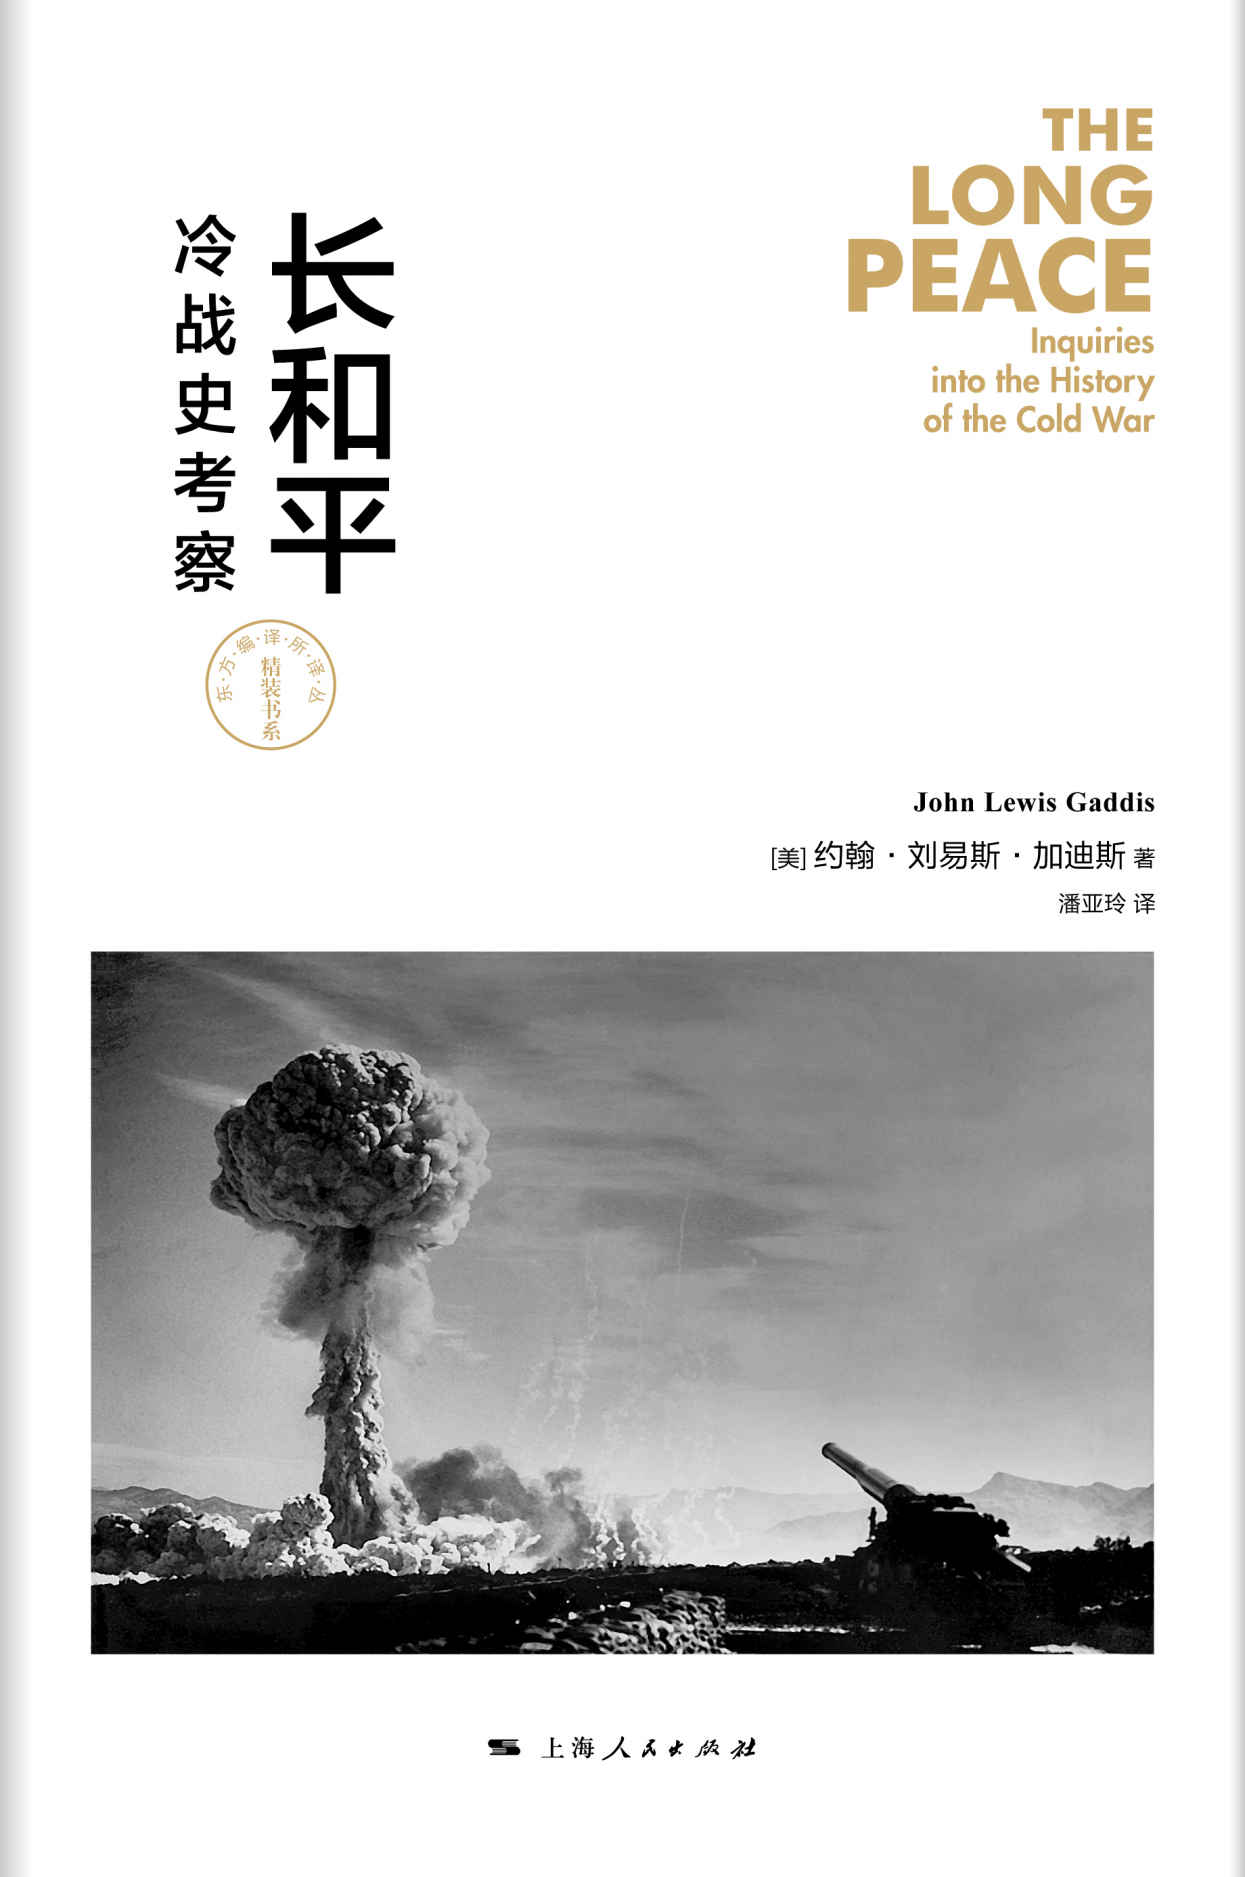 《长和平：冷战史考察》——约翰·刘易斯·加迪斯 & 潘亚玲——pdf+mobi+epub+txt+azw3电子书下载